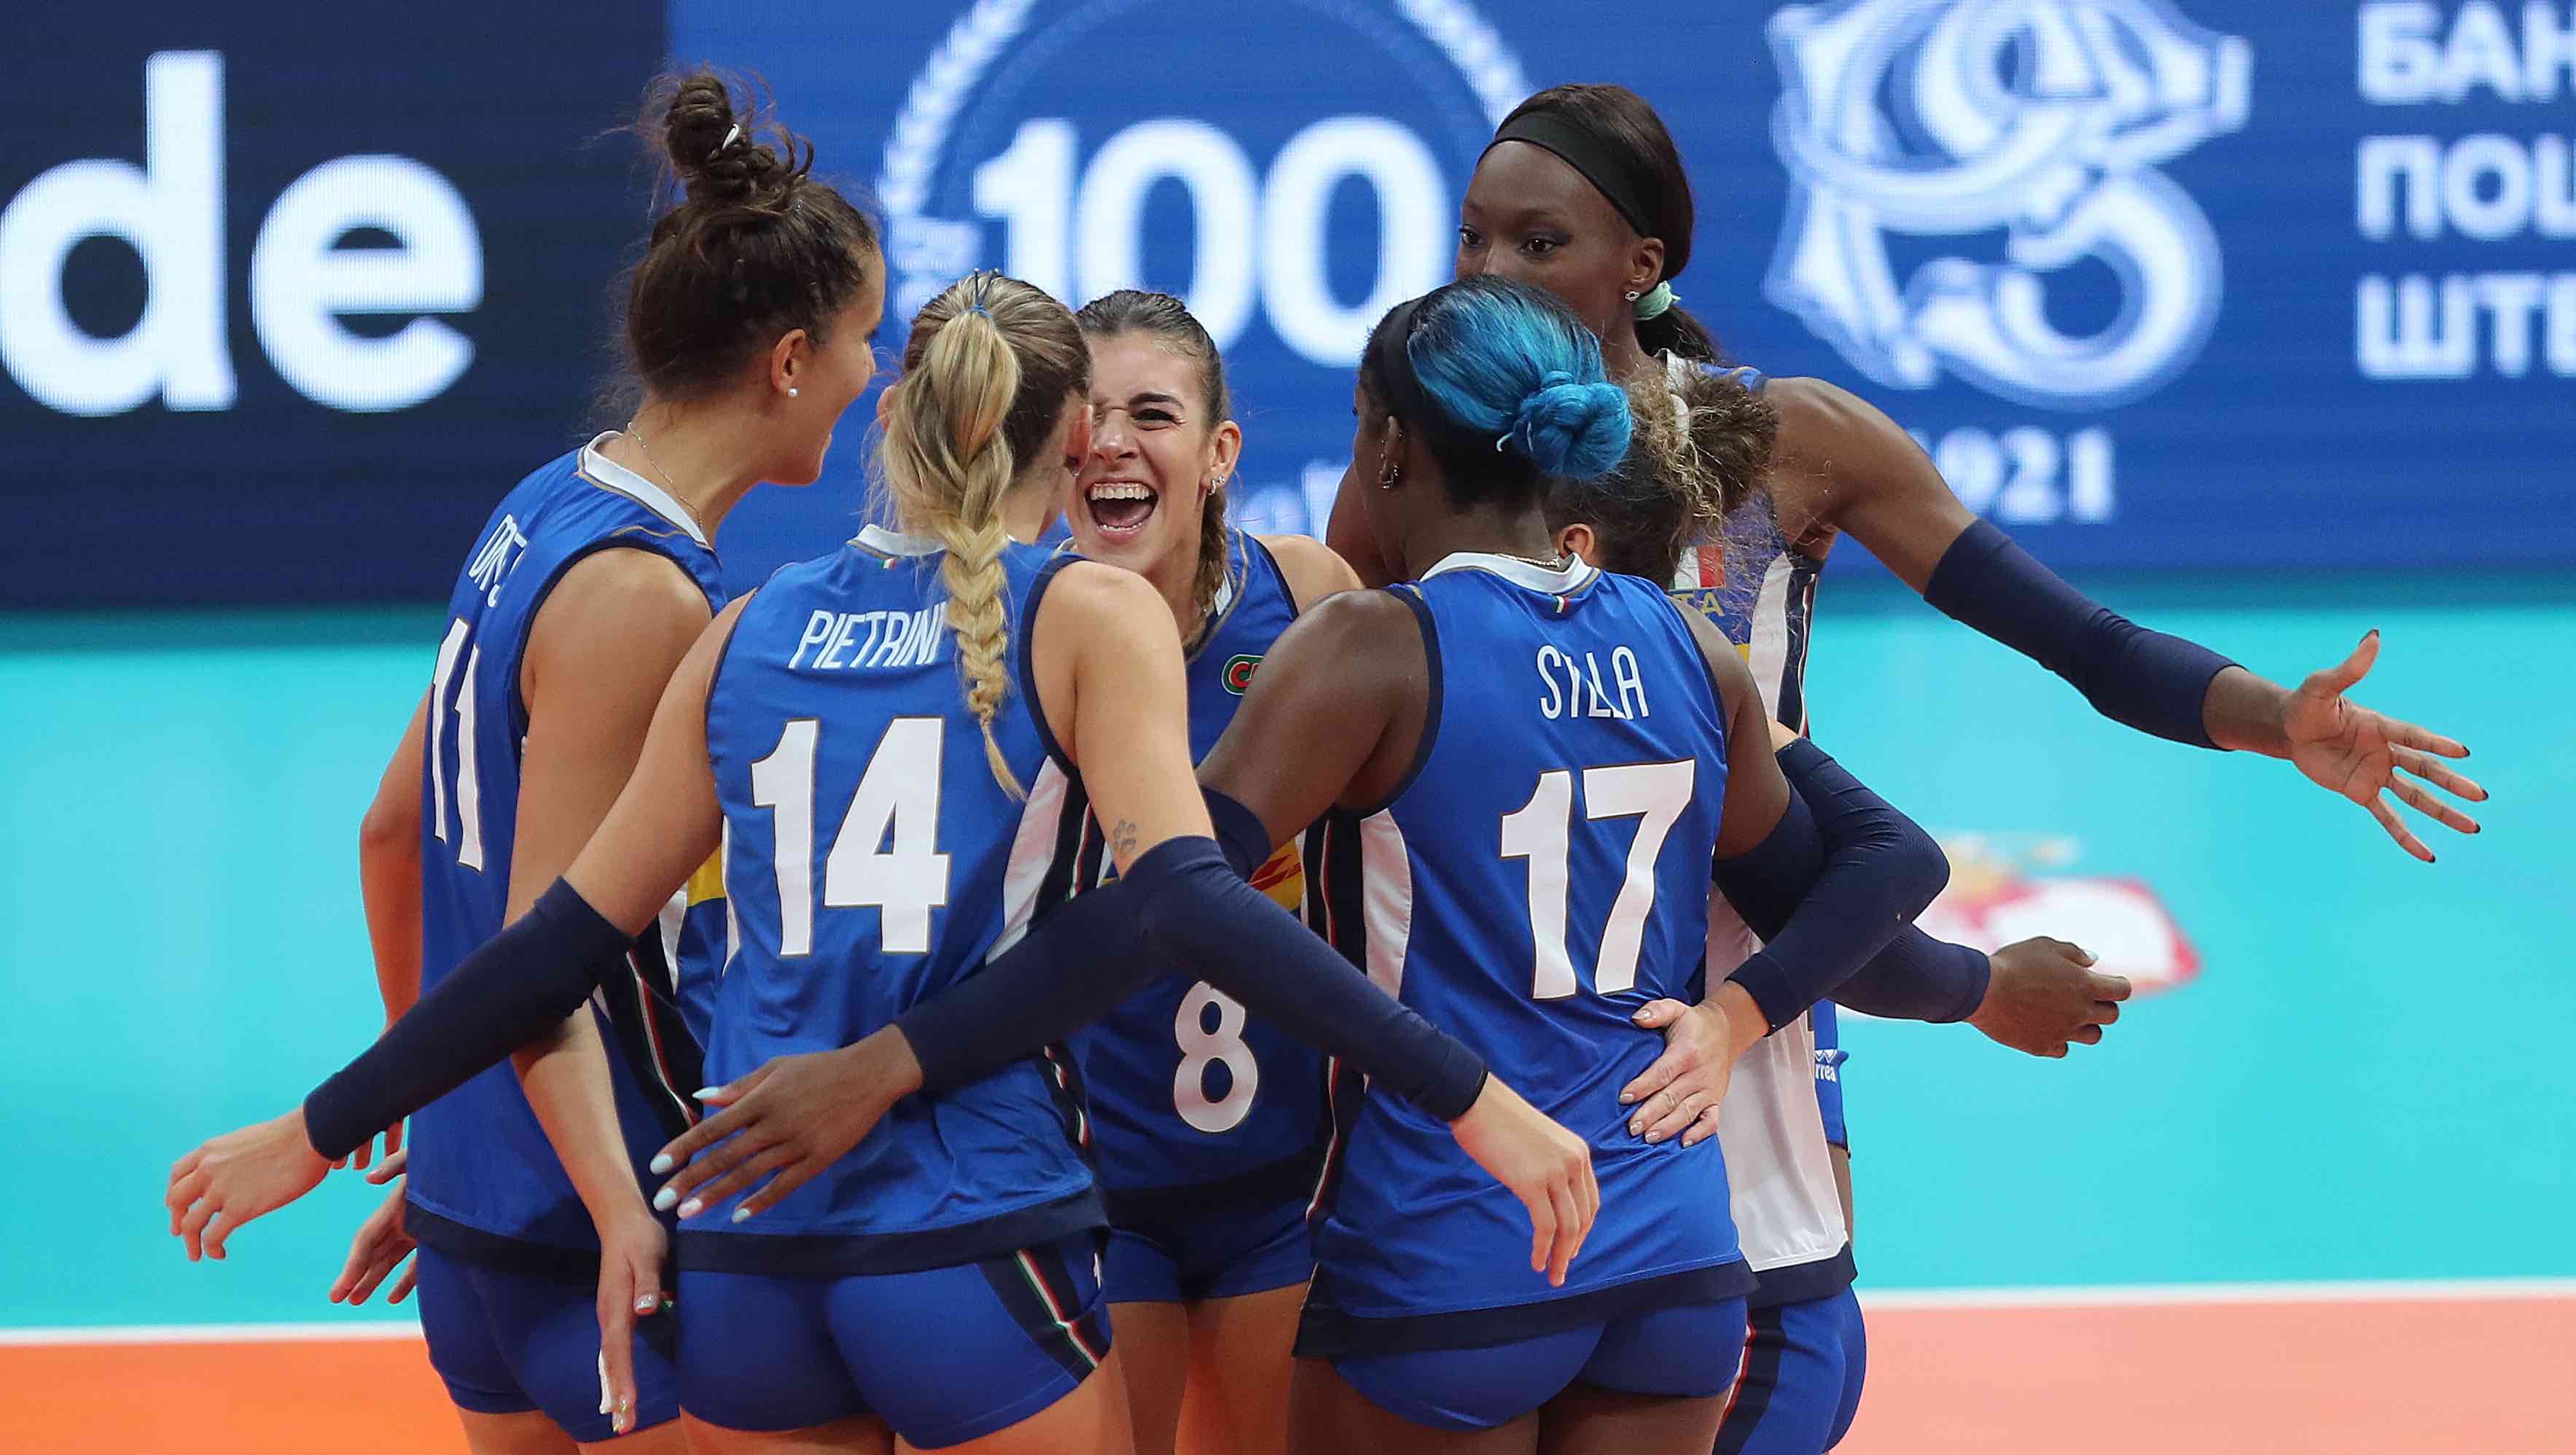 Europei femminili, Italia inarrestabile: batte 3-1 l'Olanda in semifinale, domani sfida alla Serbia per l'oro